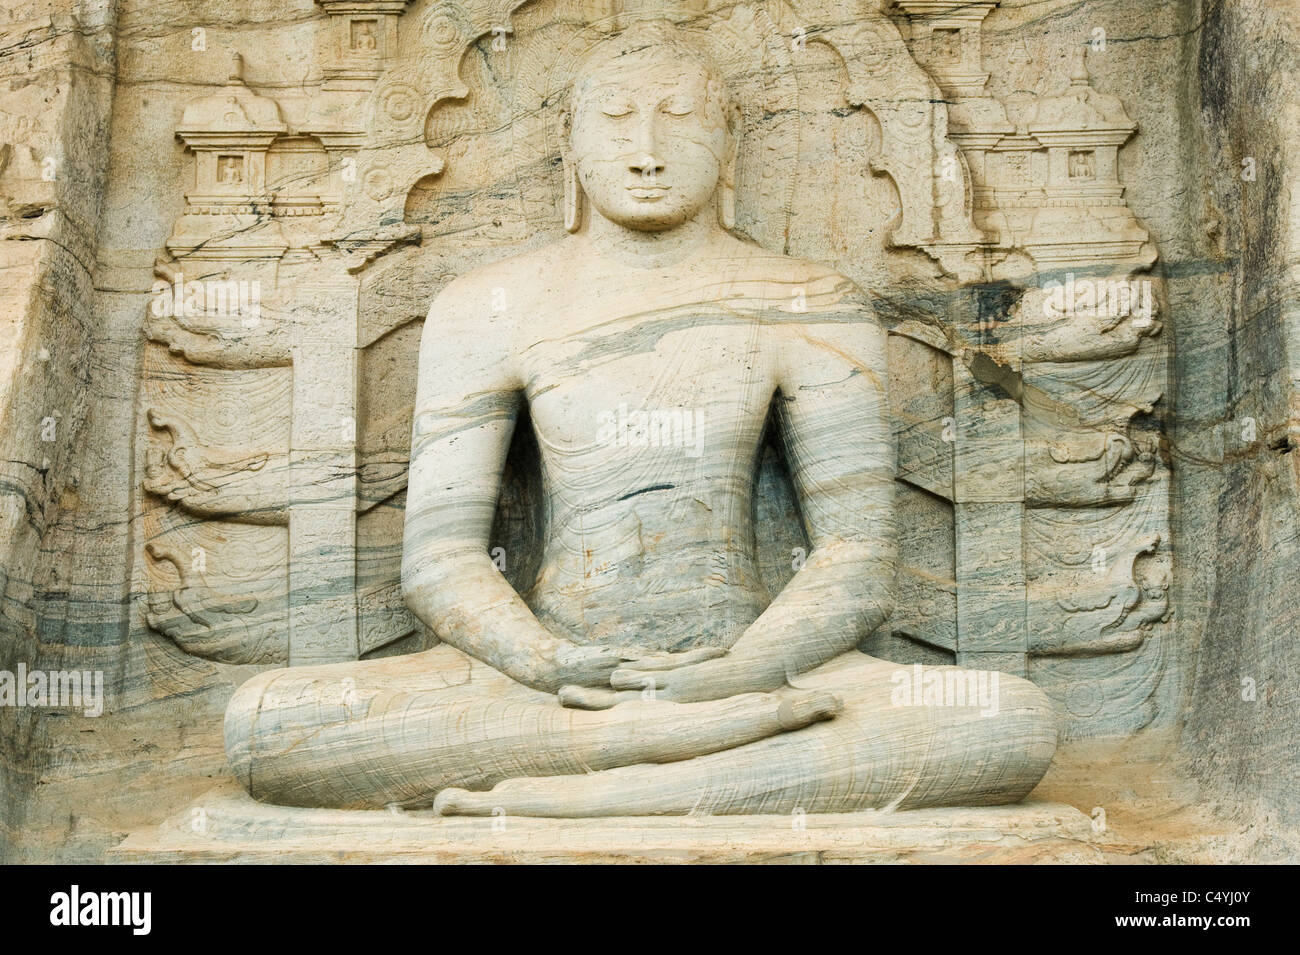 Buda de piedra, Gal Vihara, Polonnaruwa, Sri Lanka, sitio del Patrimonio Mundial. Foto de stock